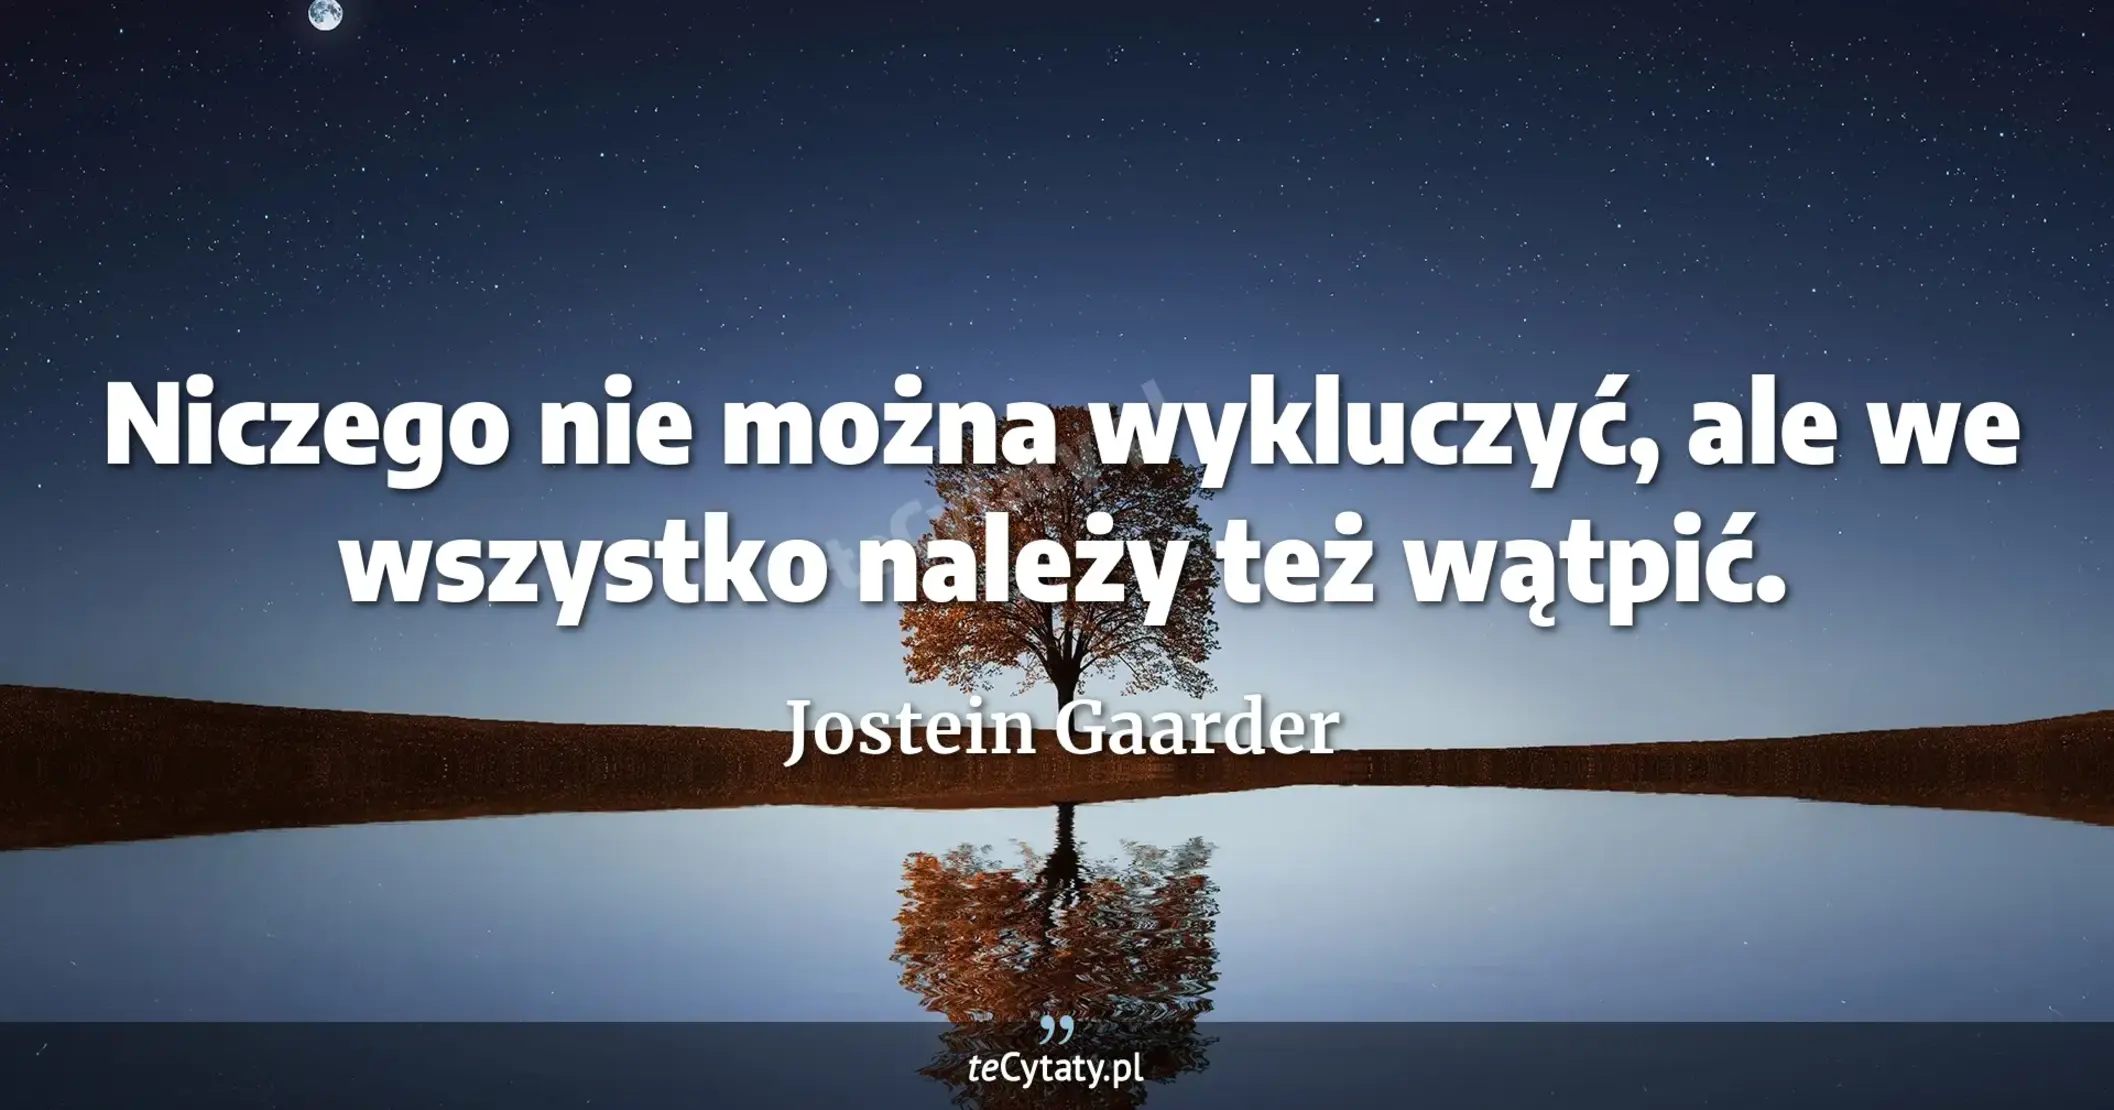 Niczego nie można wykluczyć, ale we wszystko należy też wątpić. - Jostein Gaarder